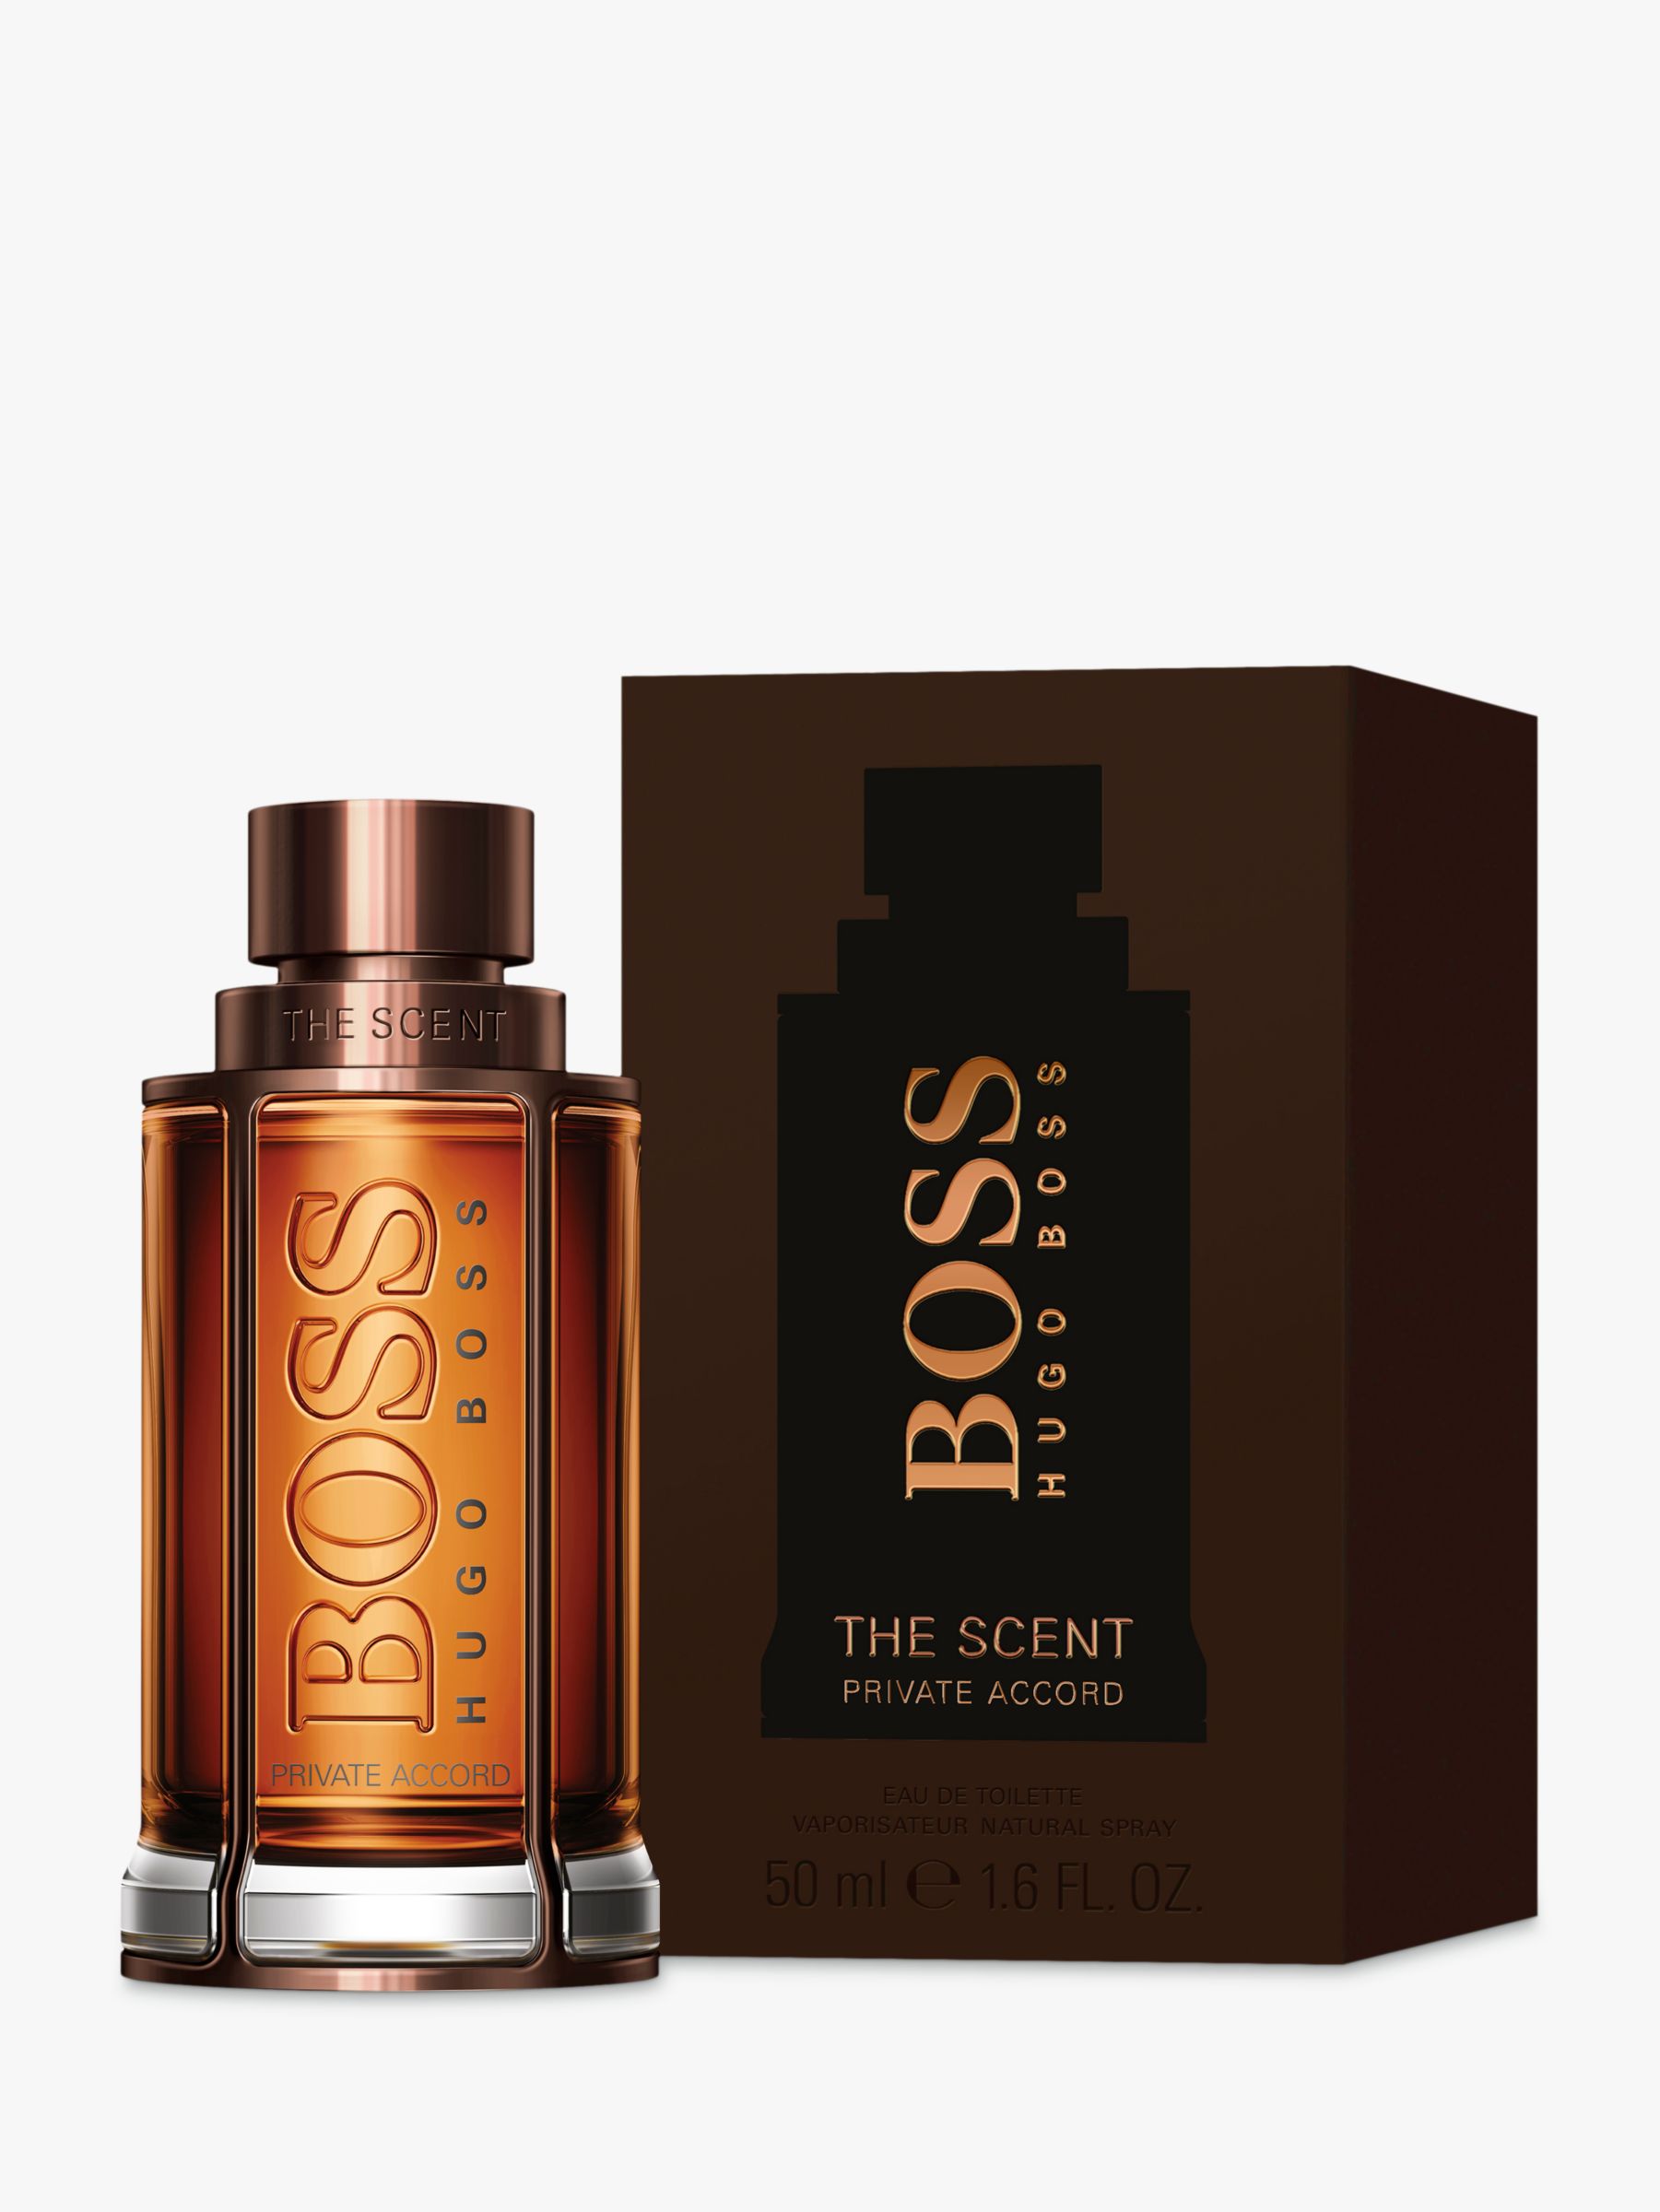 hugo boss the scent private accord fragrantica